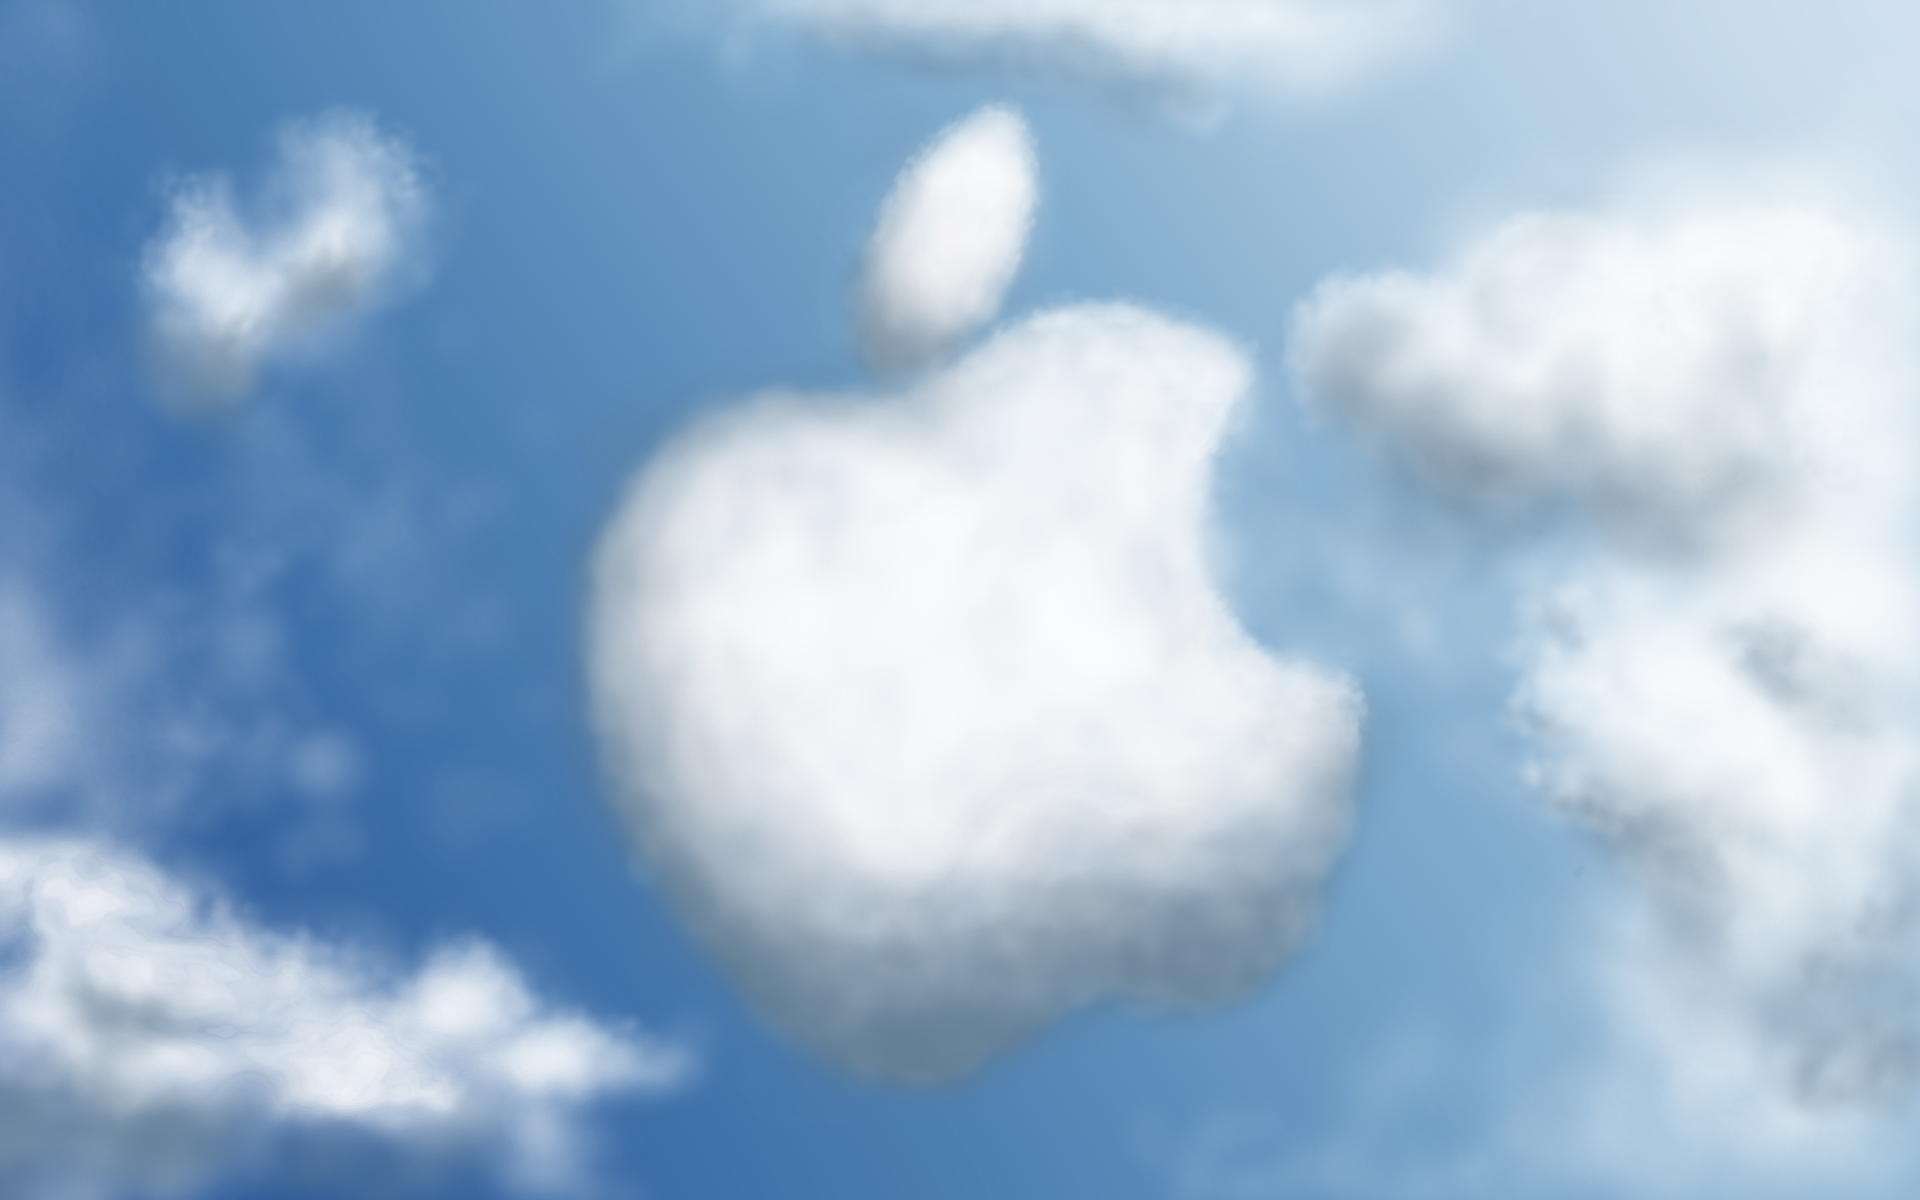 Logo da Apple na nuvem